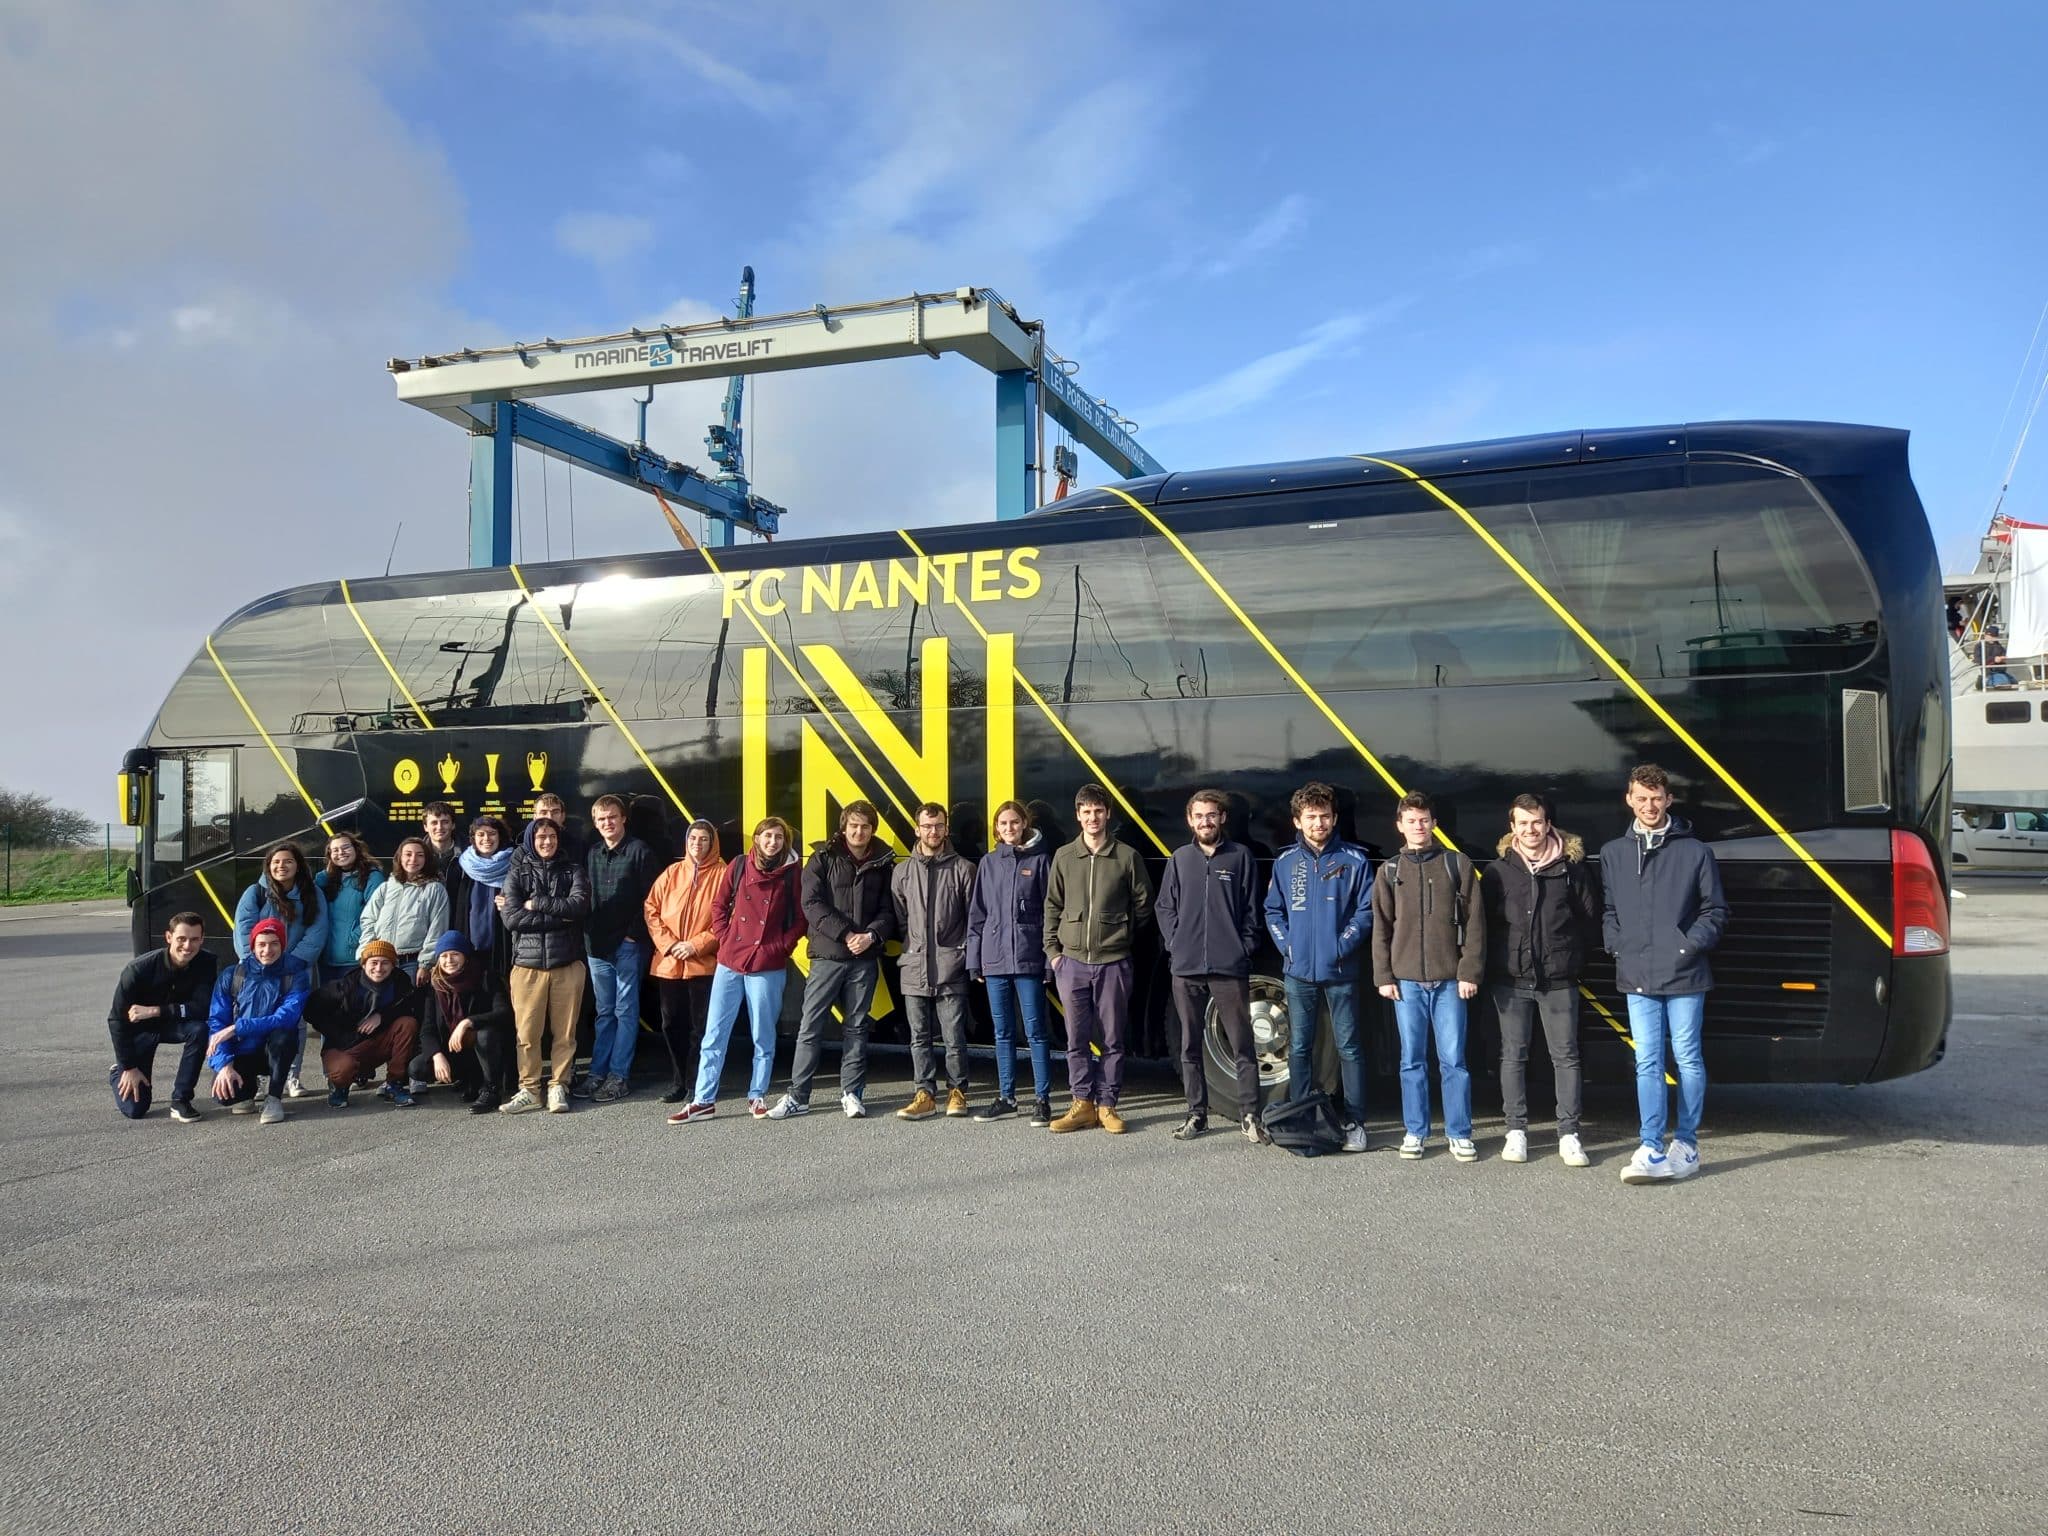 Visite de l’école d’architecture navale de Nantes